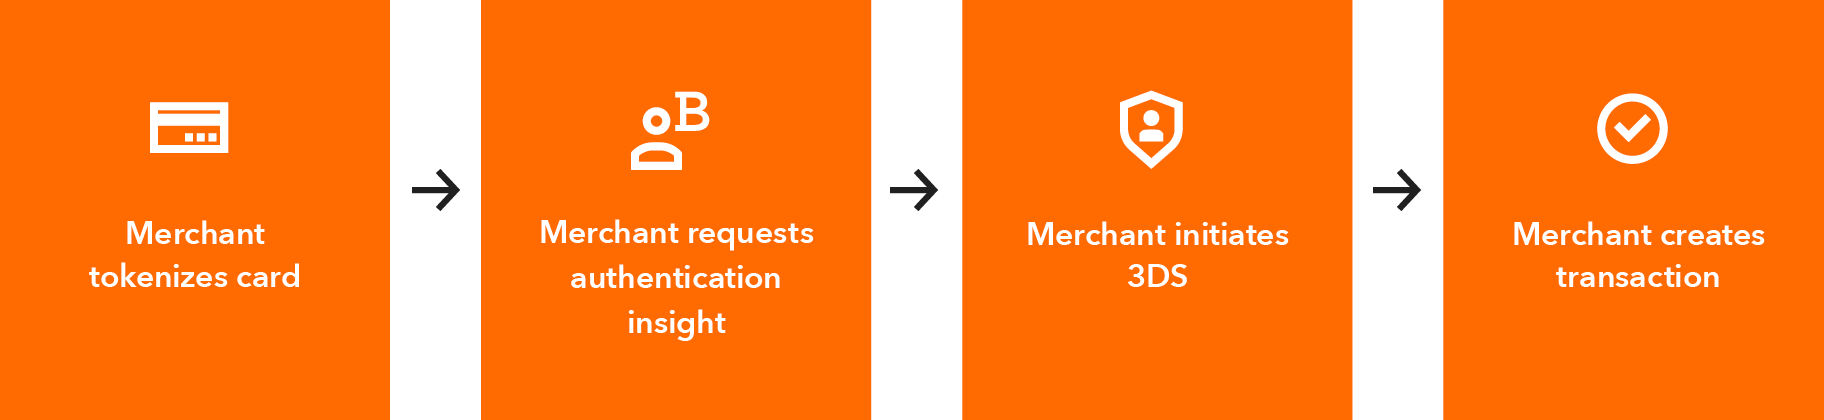 Flow chart showing 1 merchant tokenizes card 2 merchant requests authentication insight 3 merchant initiates 3DS 4 merchant creates transaction